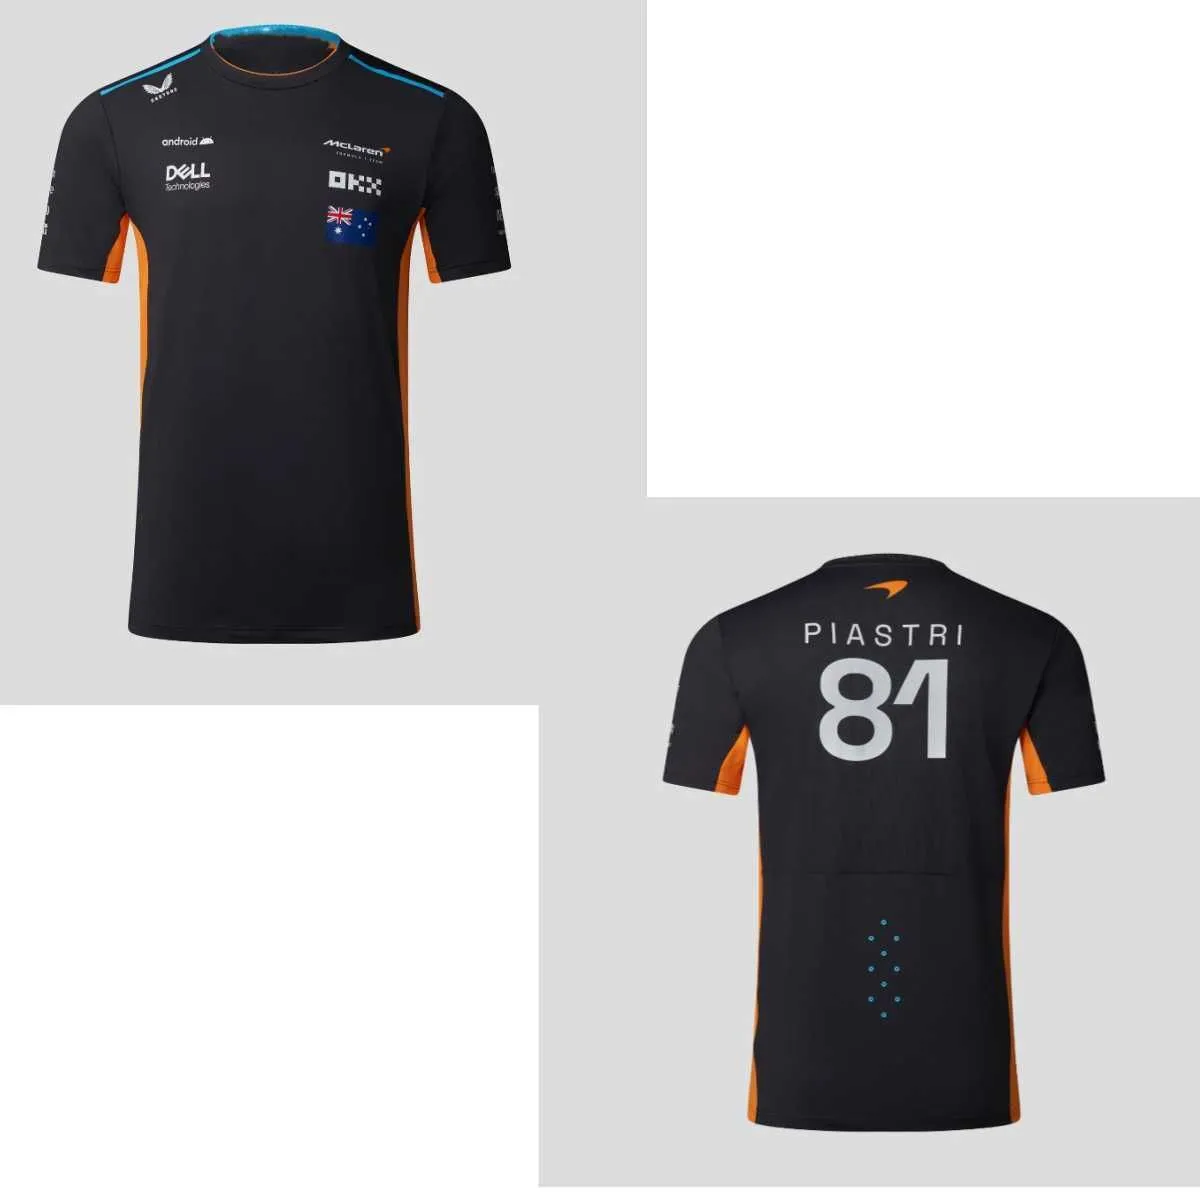 Men`s T-Shirts 2023 Season New F1 McLaren Team Men Kids Fans Summer Tshirt High Quality Male Breaable Short Sleeve ldren Tee Tops